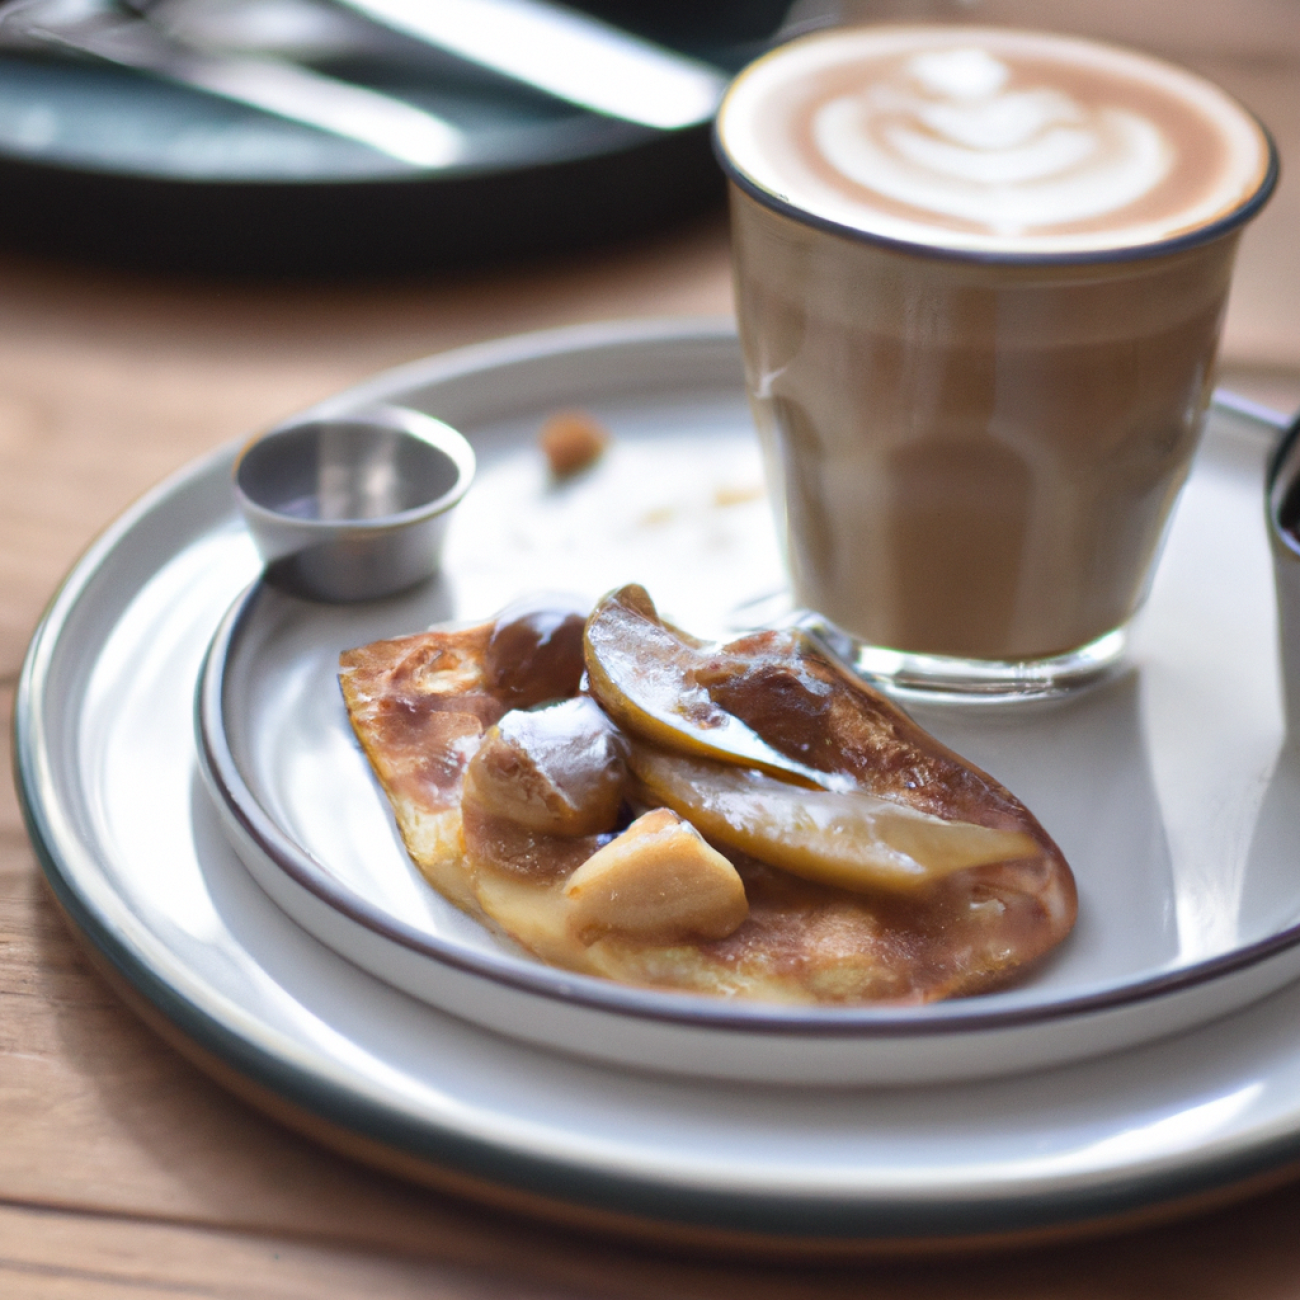 6. Provést Café: Neformální kavárenská atmosféra a chutné snídaňové pokrmy